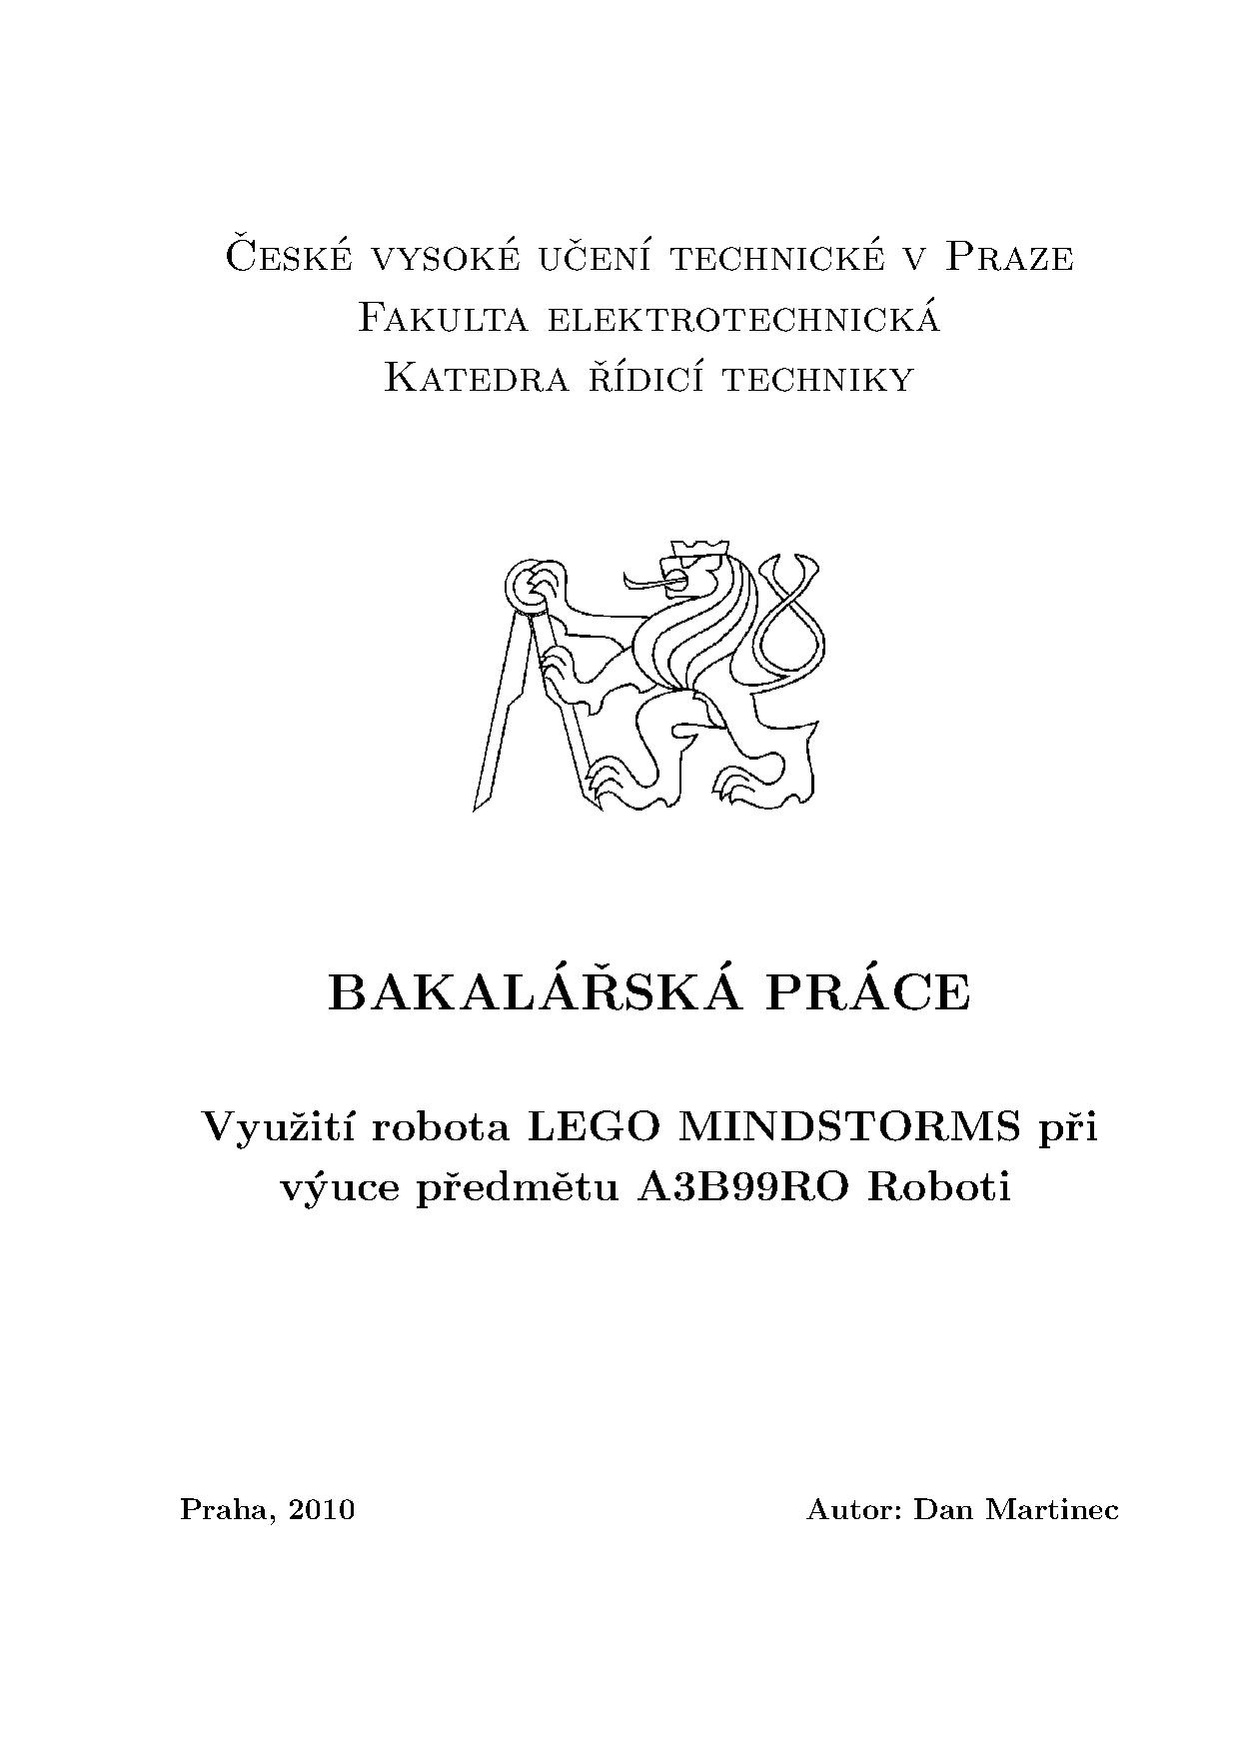 Bp 2010 martinec dan.pdf